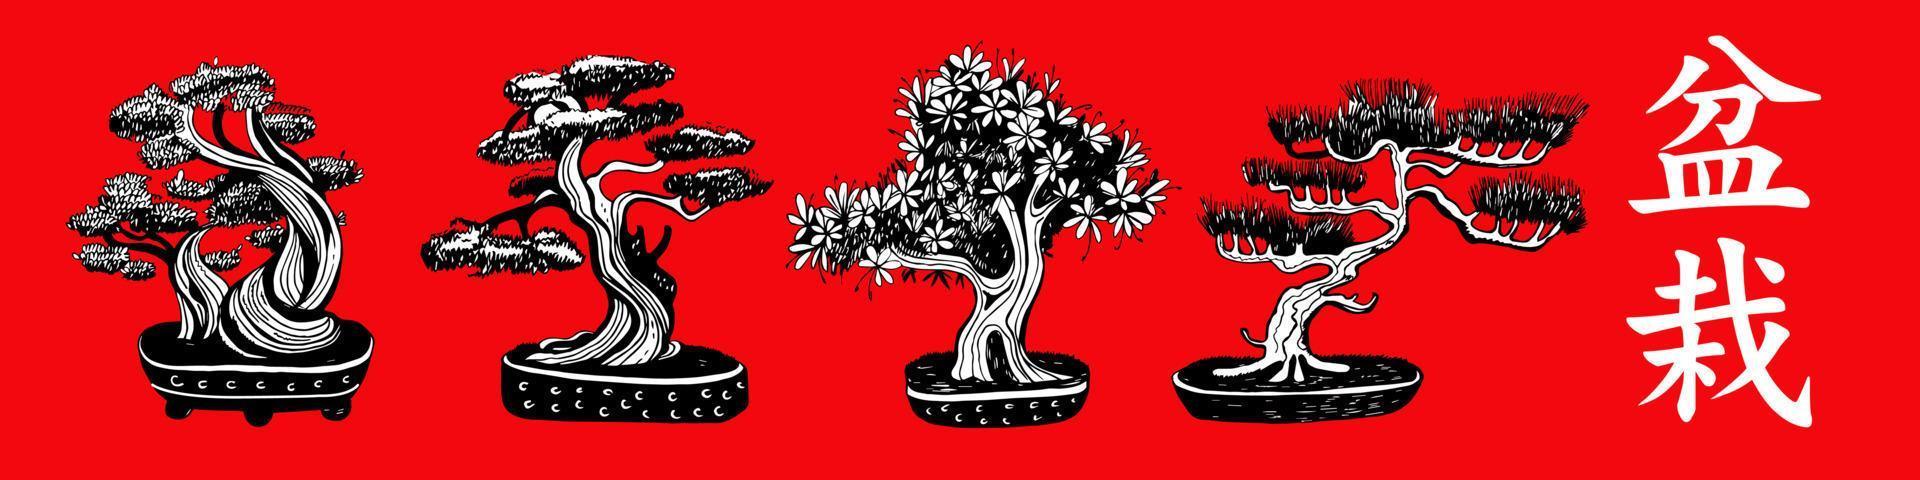 conjunto de 4 árvores bonsai. vetor desenhado à mão ilustração a preto e branco sobre um fundo vermelho. inscrição em personagens de bonsai japoneses.